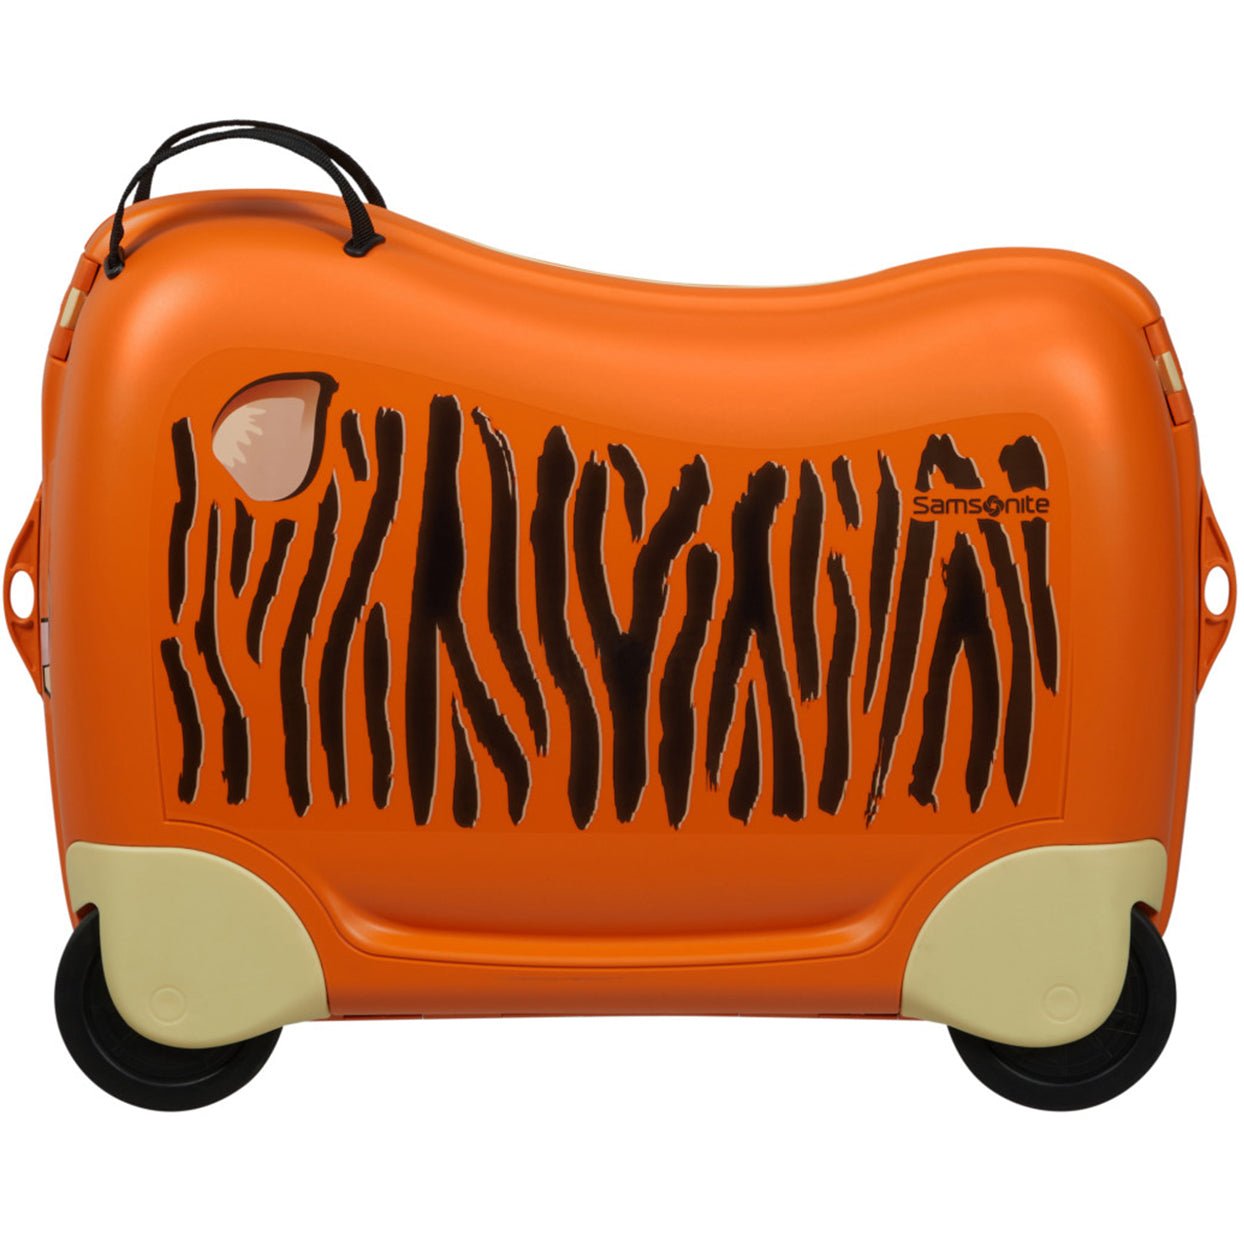 Samsonite Dream2Go Ride-On Suitcase 52 cm - School Bus